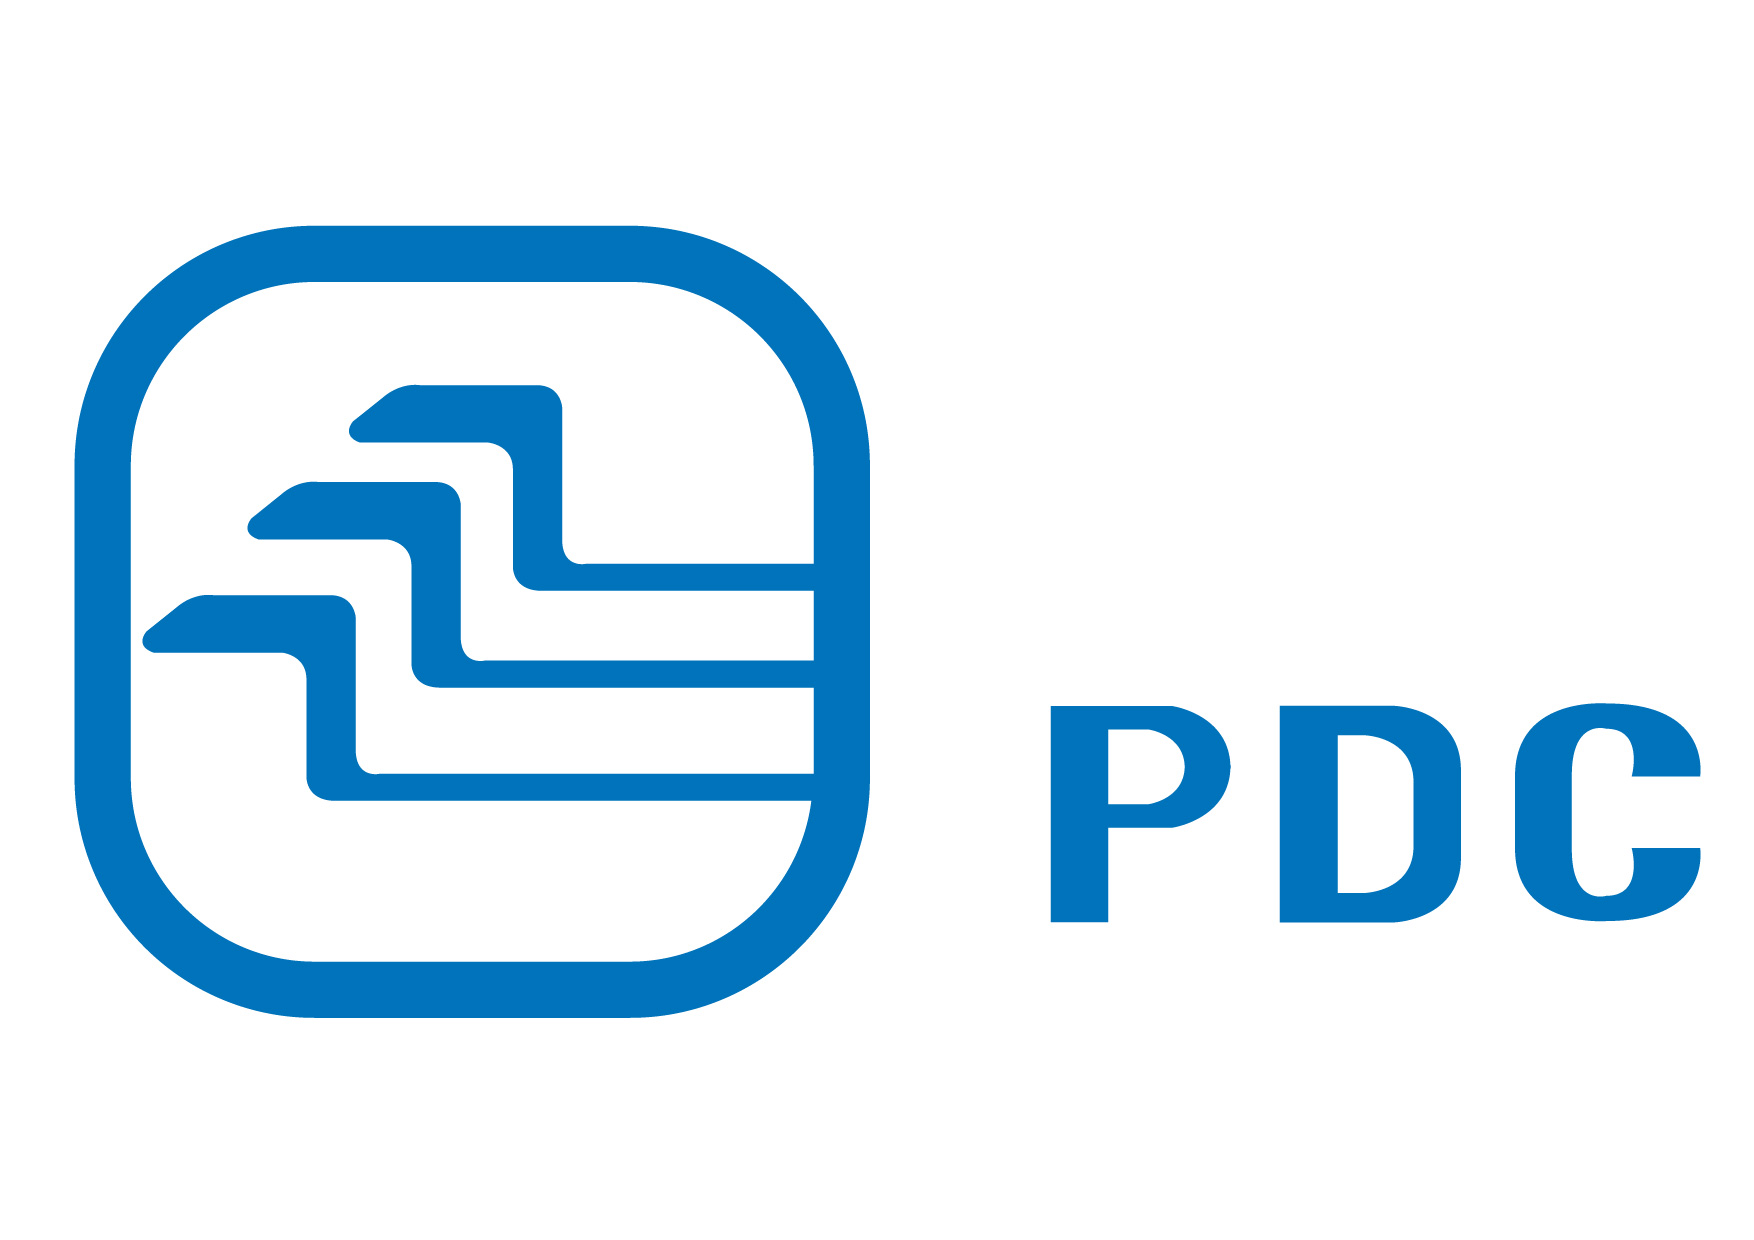 PDC logo 2014.jpg